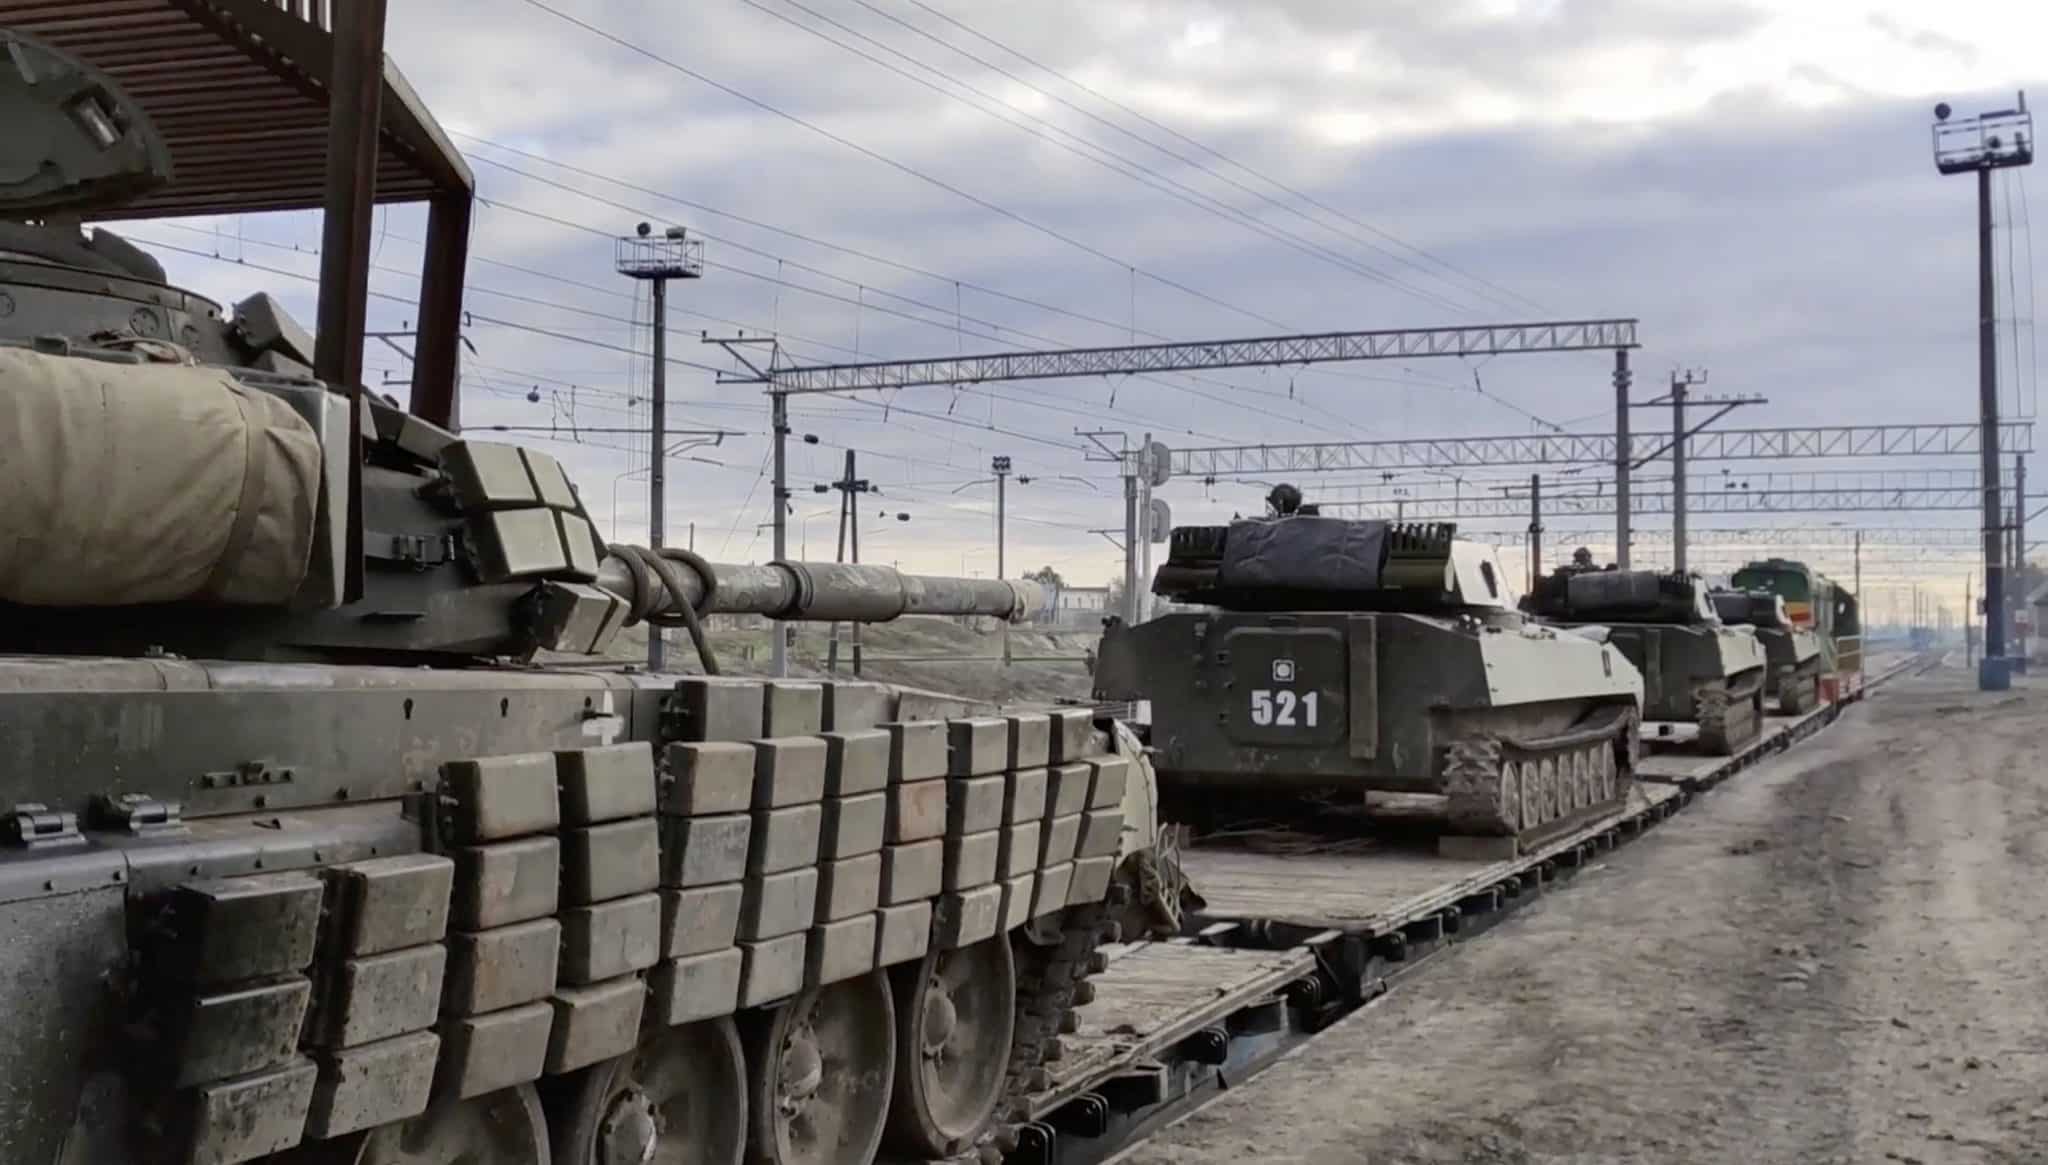 Ρωσικά στρατεύματα επιστρέφουν στην πατρίδα τους από στρατιωτική εκπαίδευση